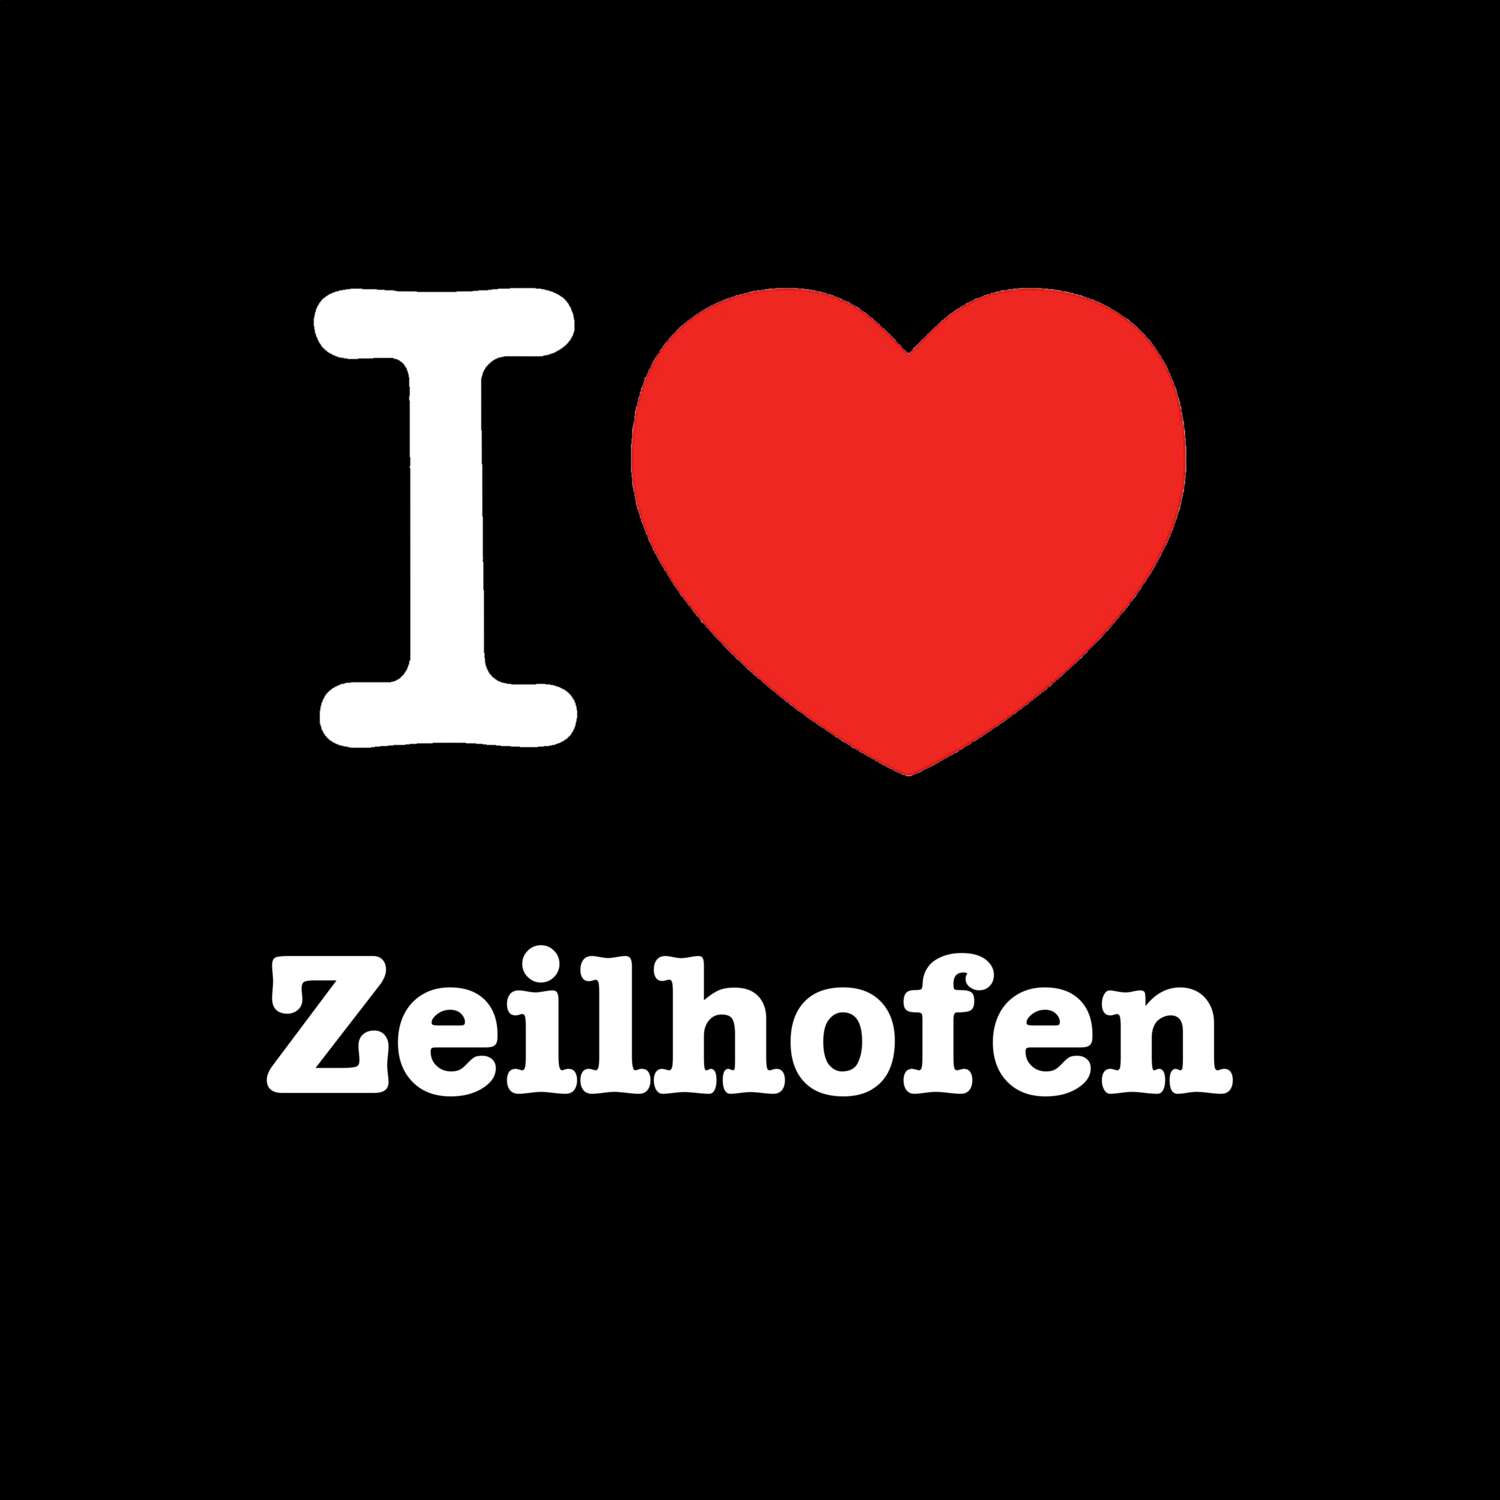 Zeilhofen T-Shirt »I love«